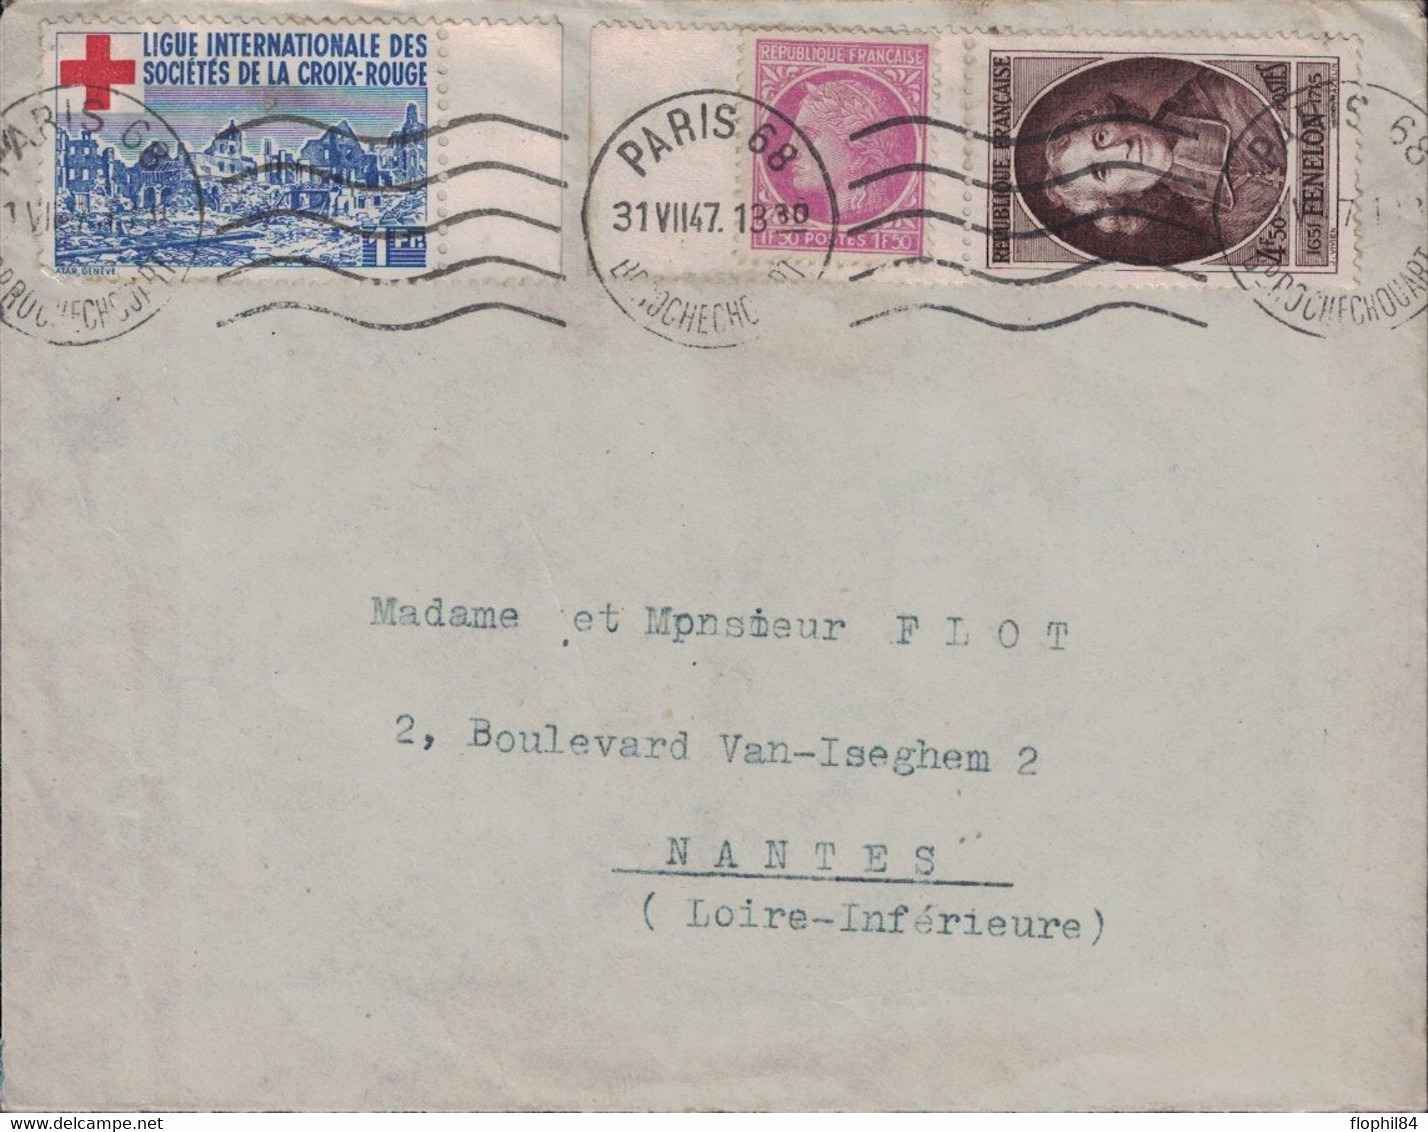 PARIS 68 - BD ROCHECHOUARD - TIMBRE DE DE LA LIGUE DES STES DE LA CROIX ROUGE - BEL AFFRANCHISSEMENT - 31-7-1947. - Red Cross